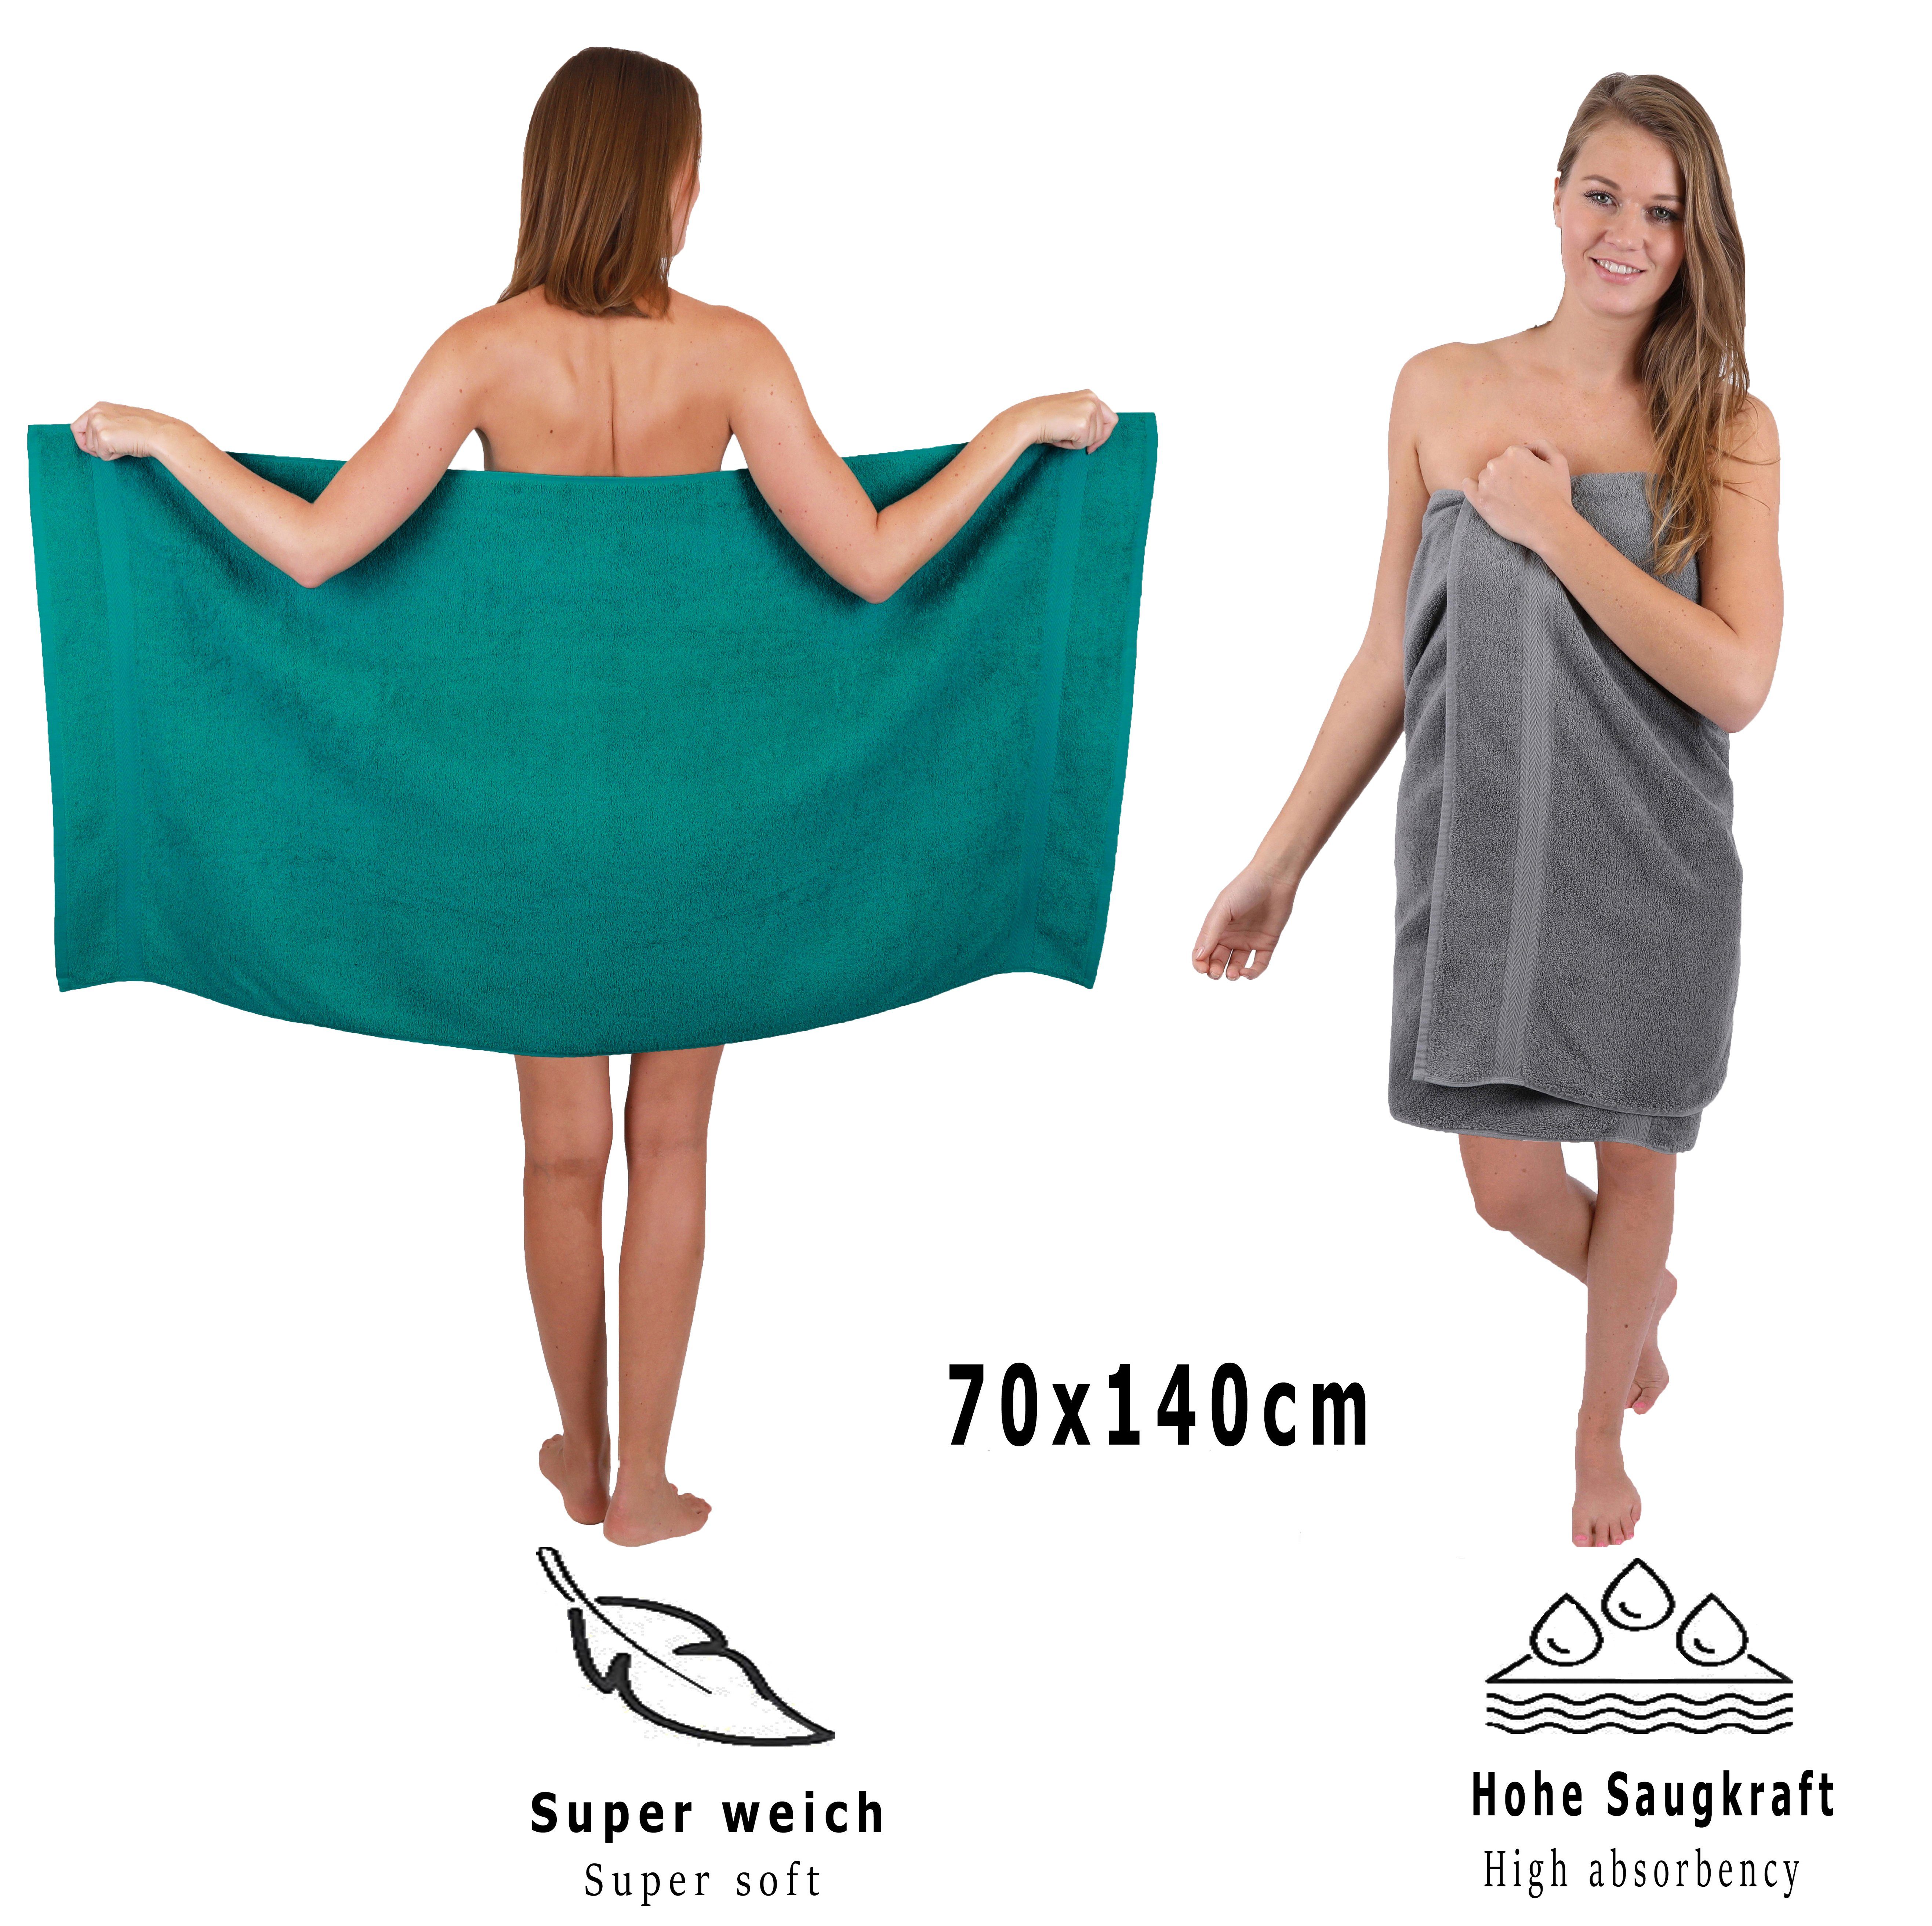 & Baumwolle, Smaragdgrün Farbe (10-tlg) 10-TLG. Premium Handtuch-Set Handtuch Set Betz 100% Anthrazit,